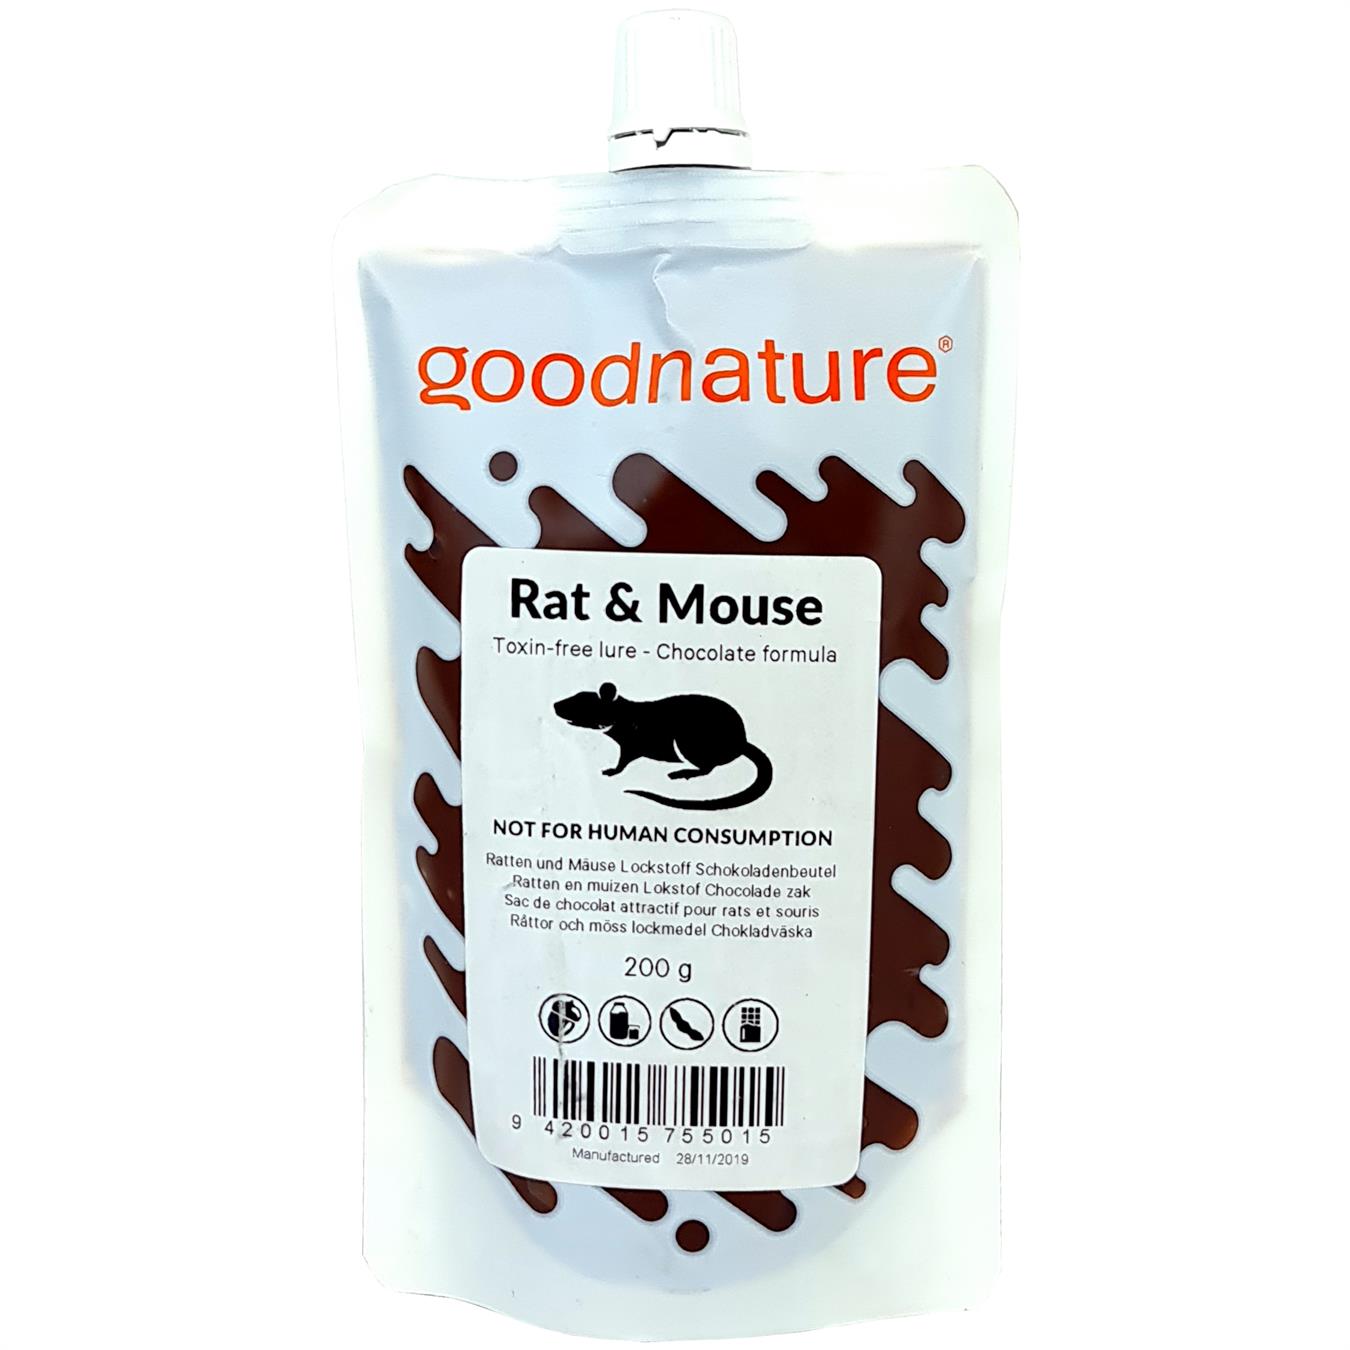 Sac de chocolat attractif pour rats et souris 200g